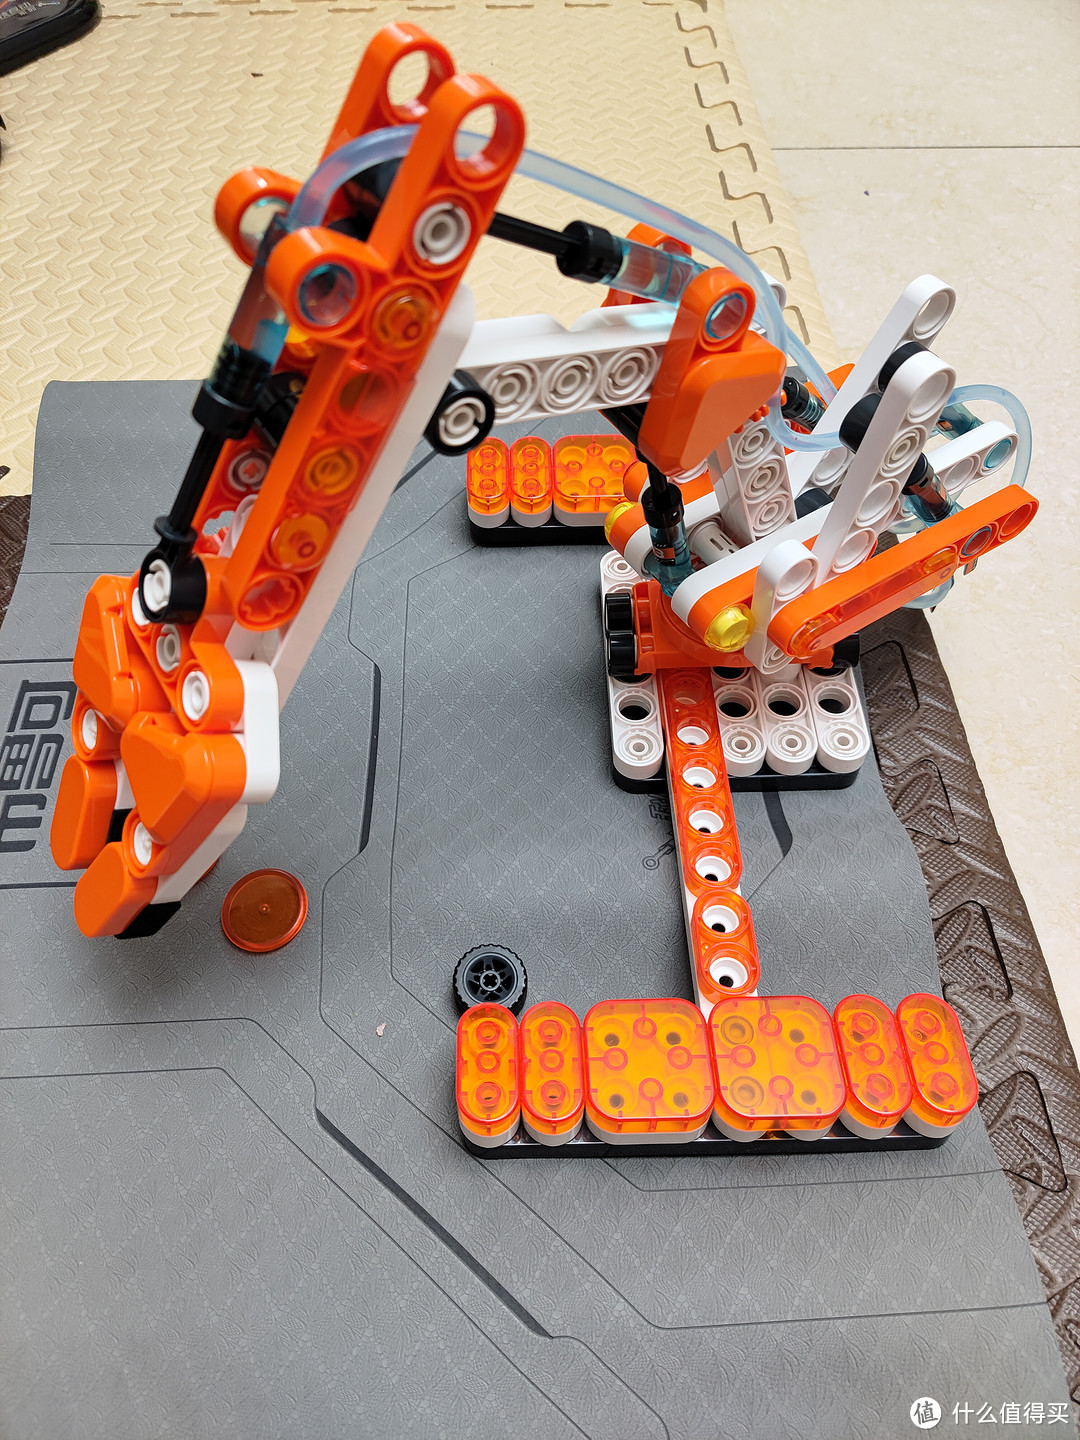 生产积木的玩具的机器图片